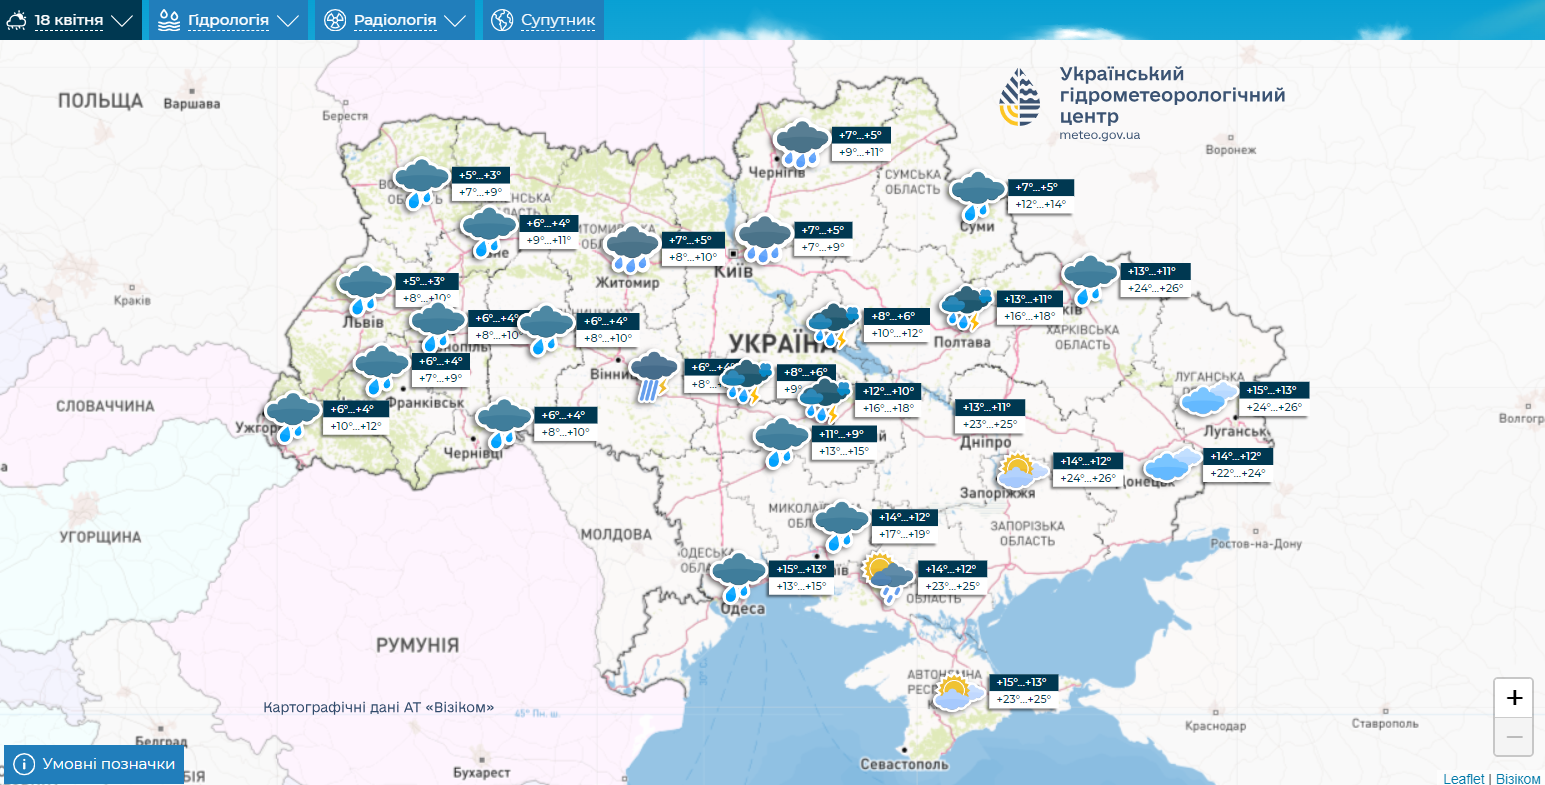 "Погрелись, пора померзнуть": синоптик уточнила прогноз погоды в Украине на четверг. Карта